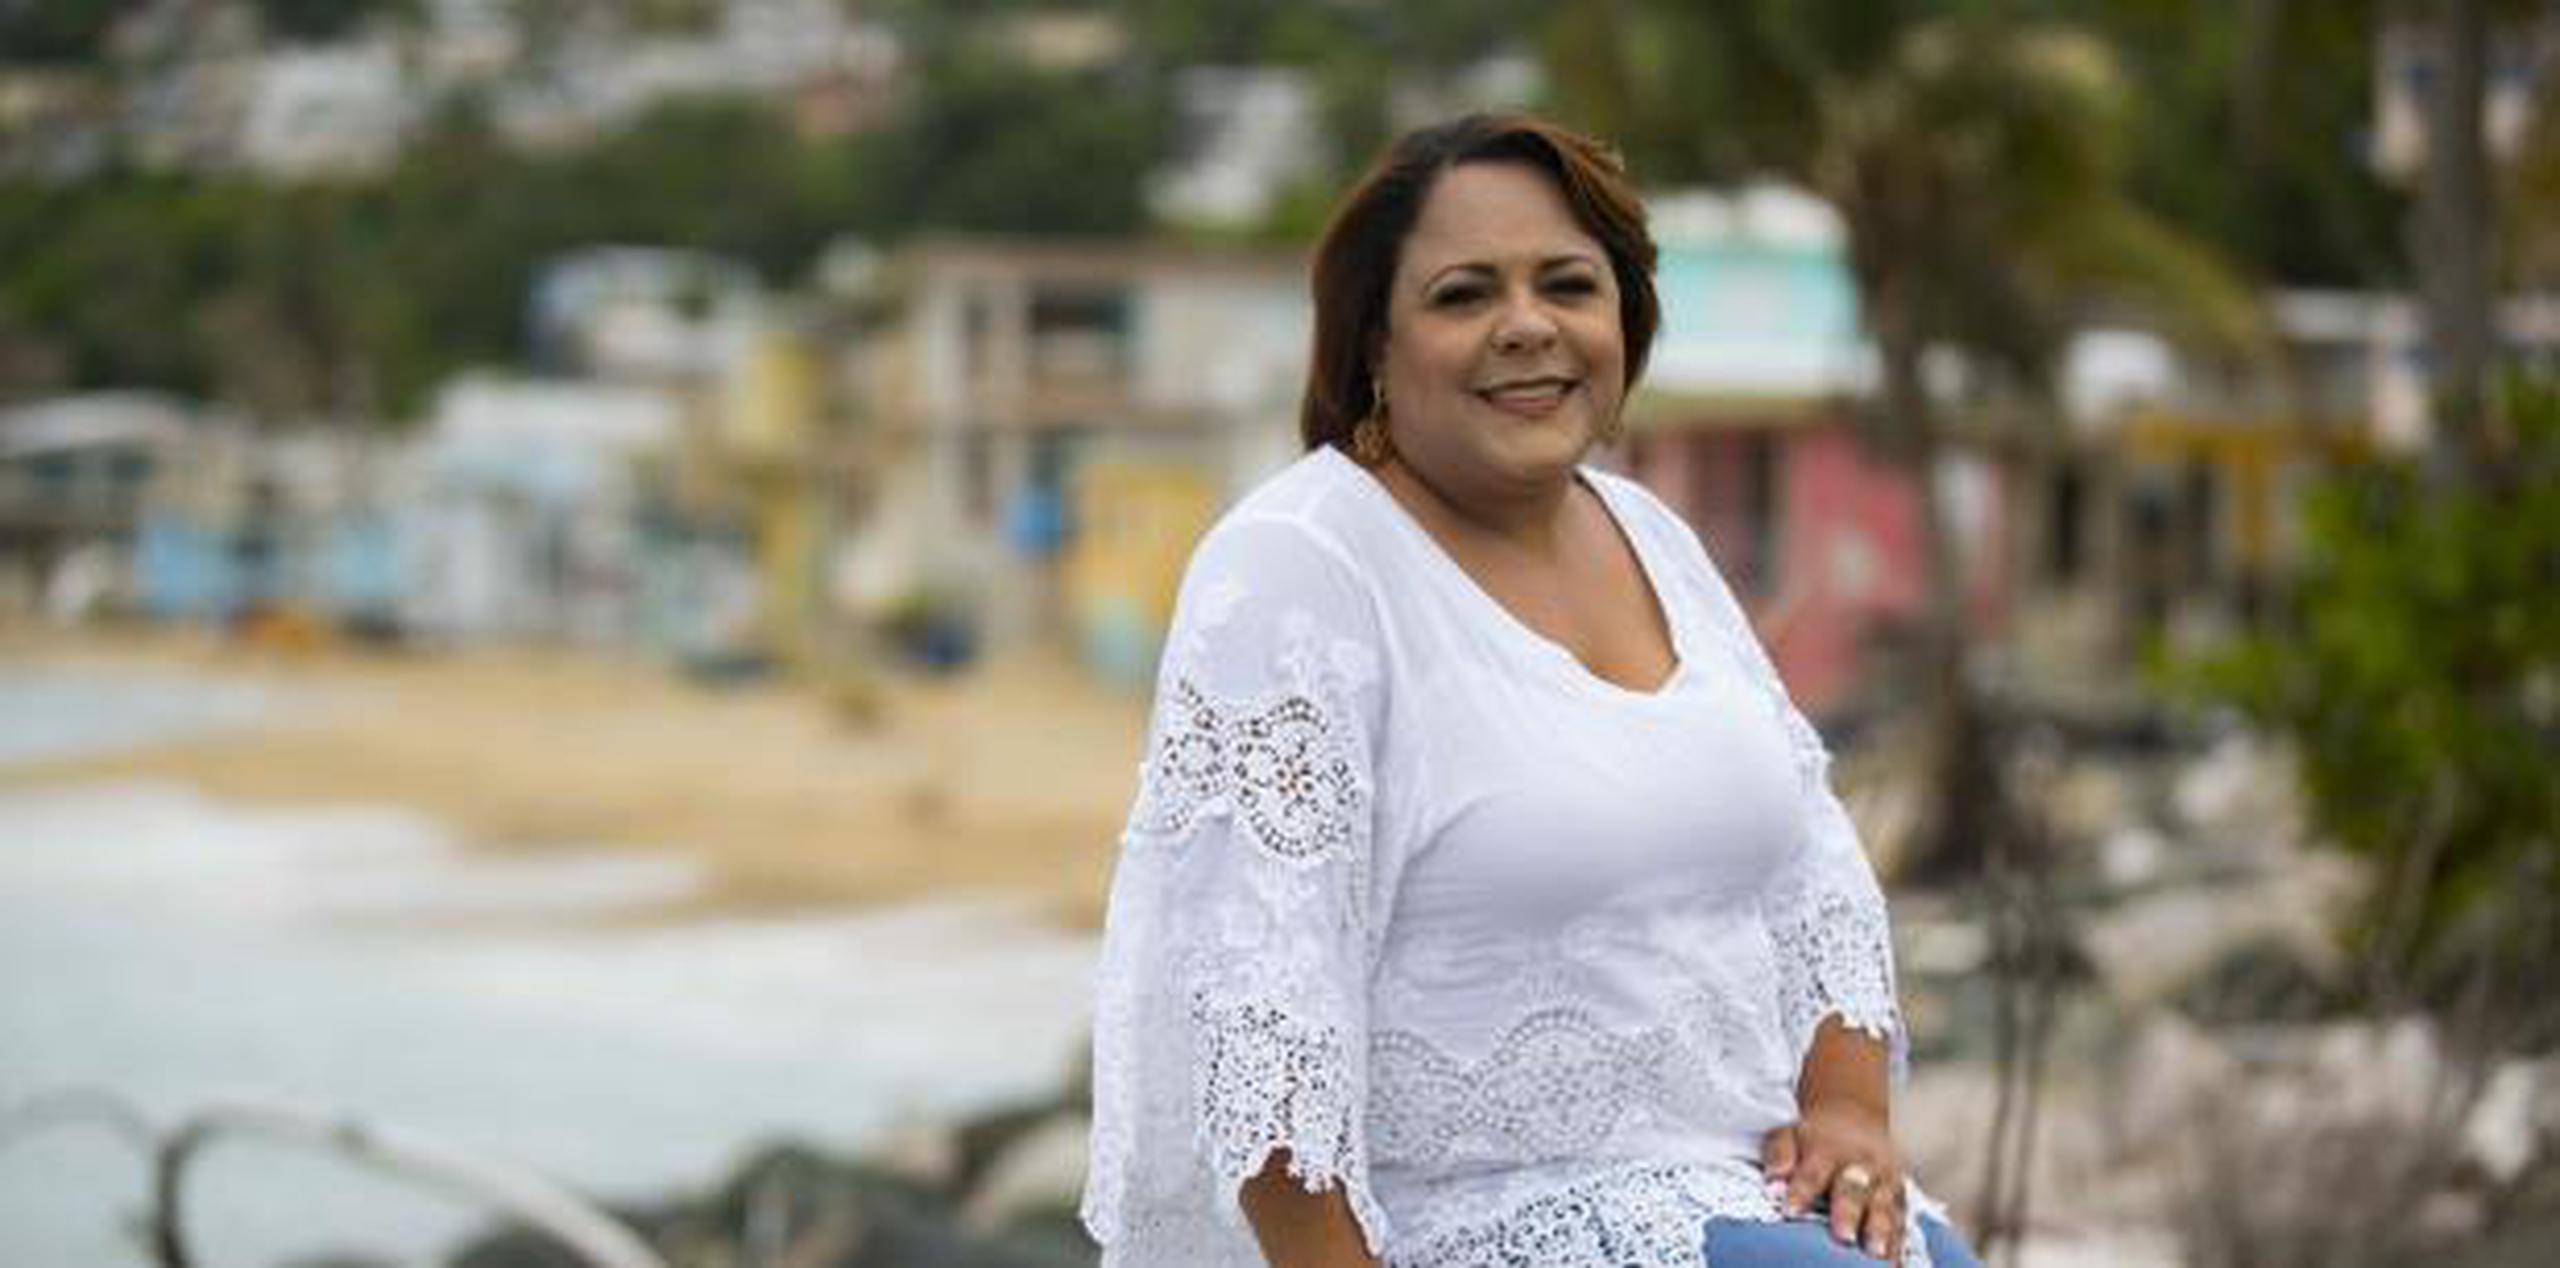 Yanitsia Irizarry vio su oportunidad tras el huracán María (tonito.zayas@gfrmedia.com Ramon " Tonito " Zayas / GFR Media)